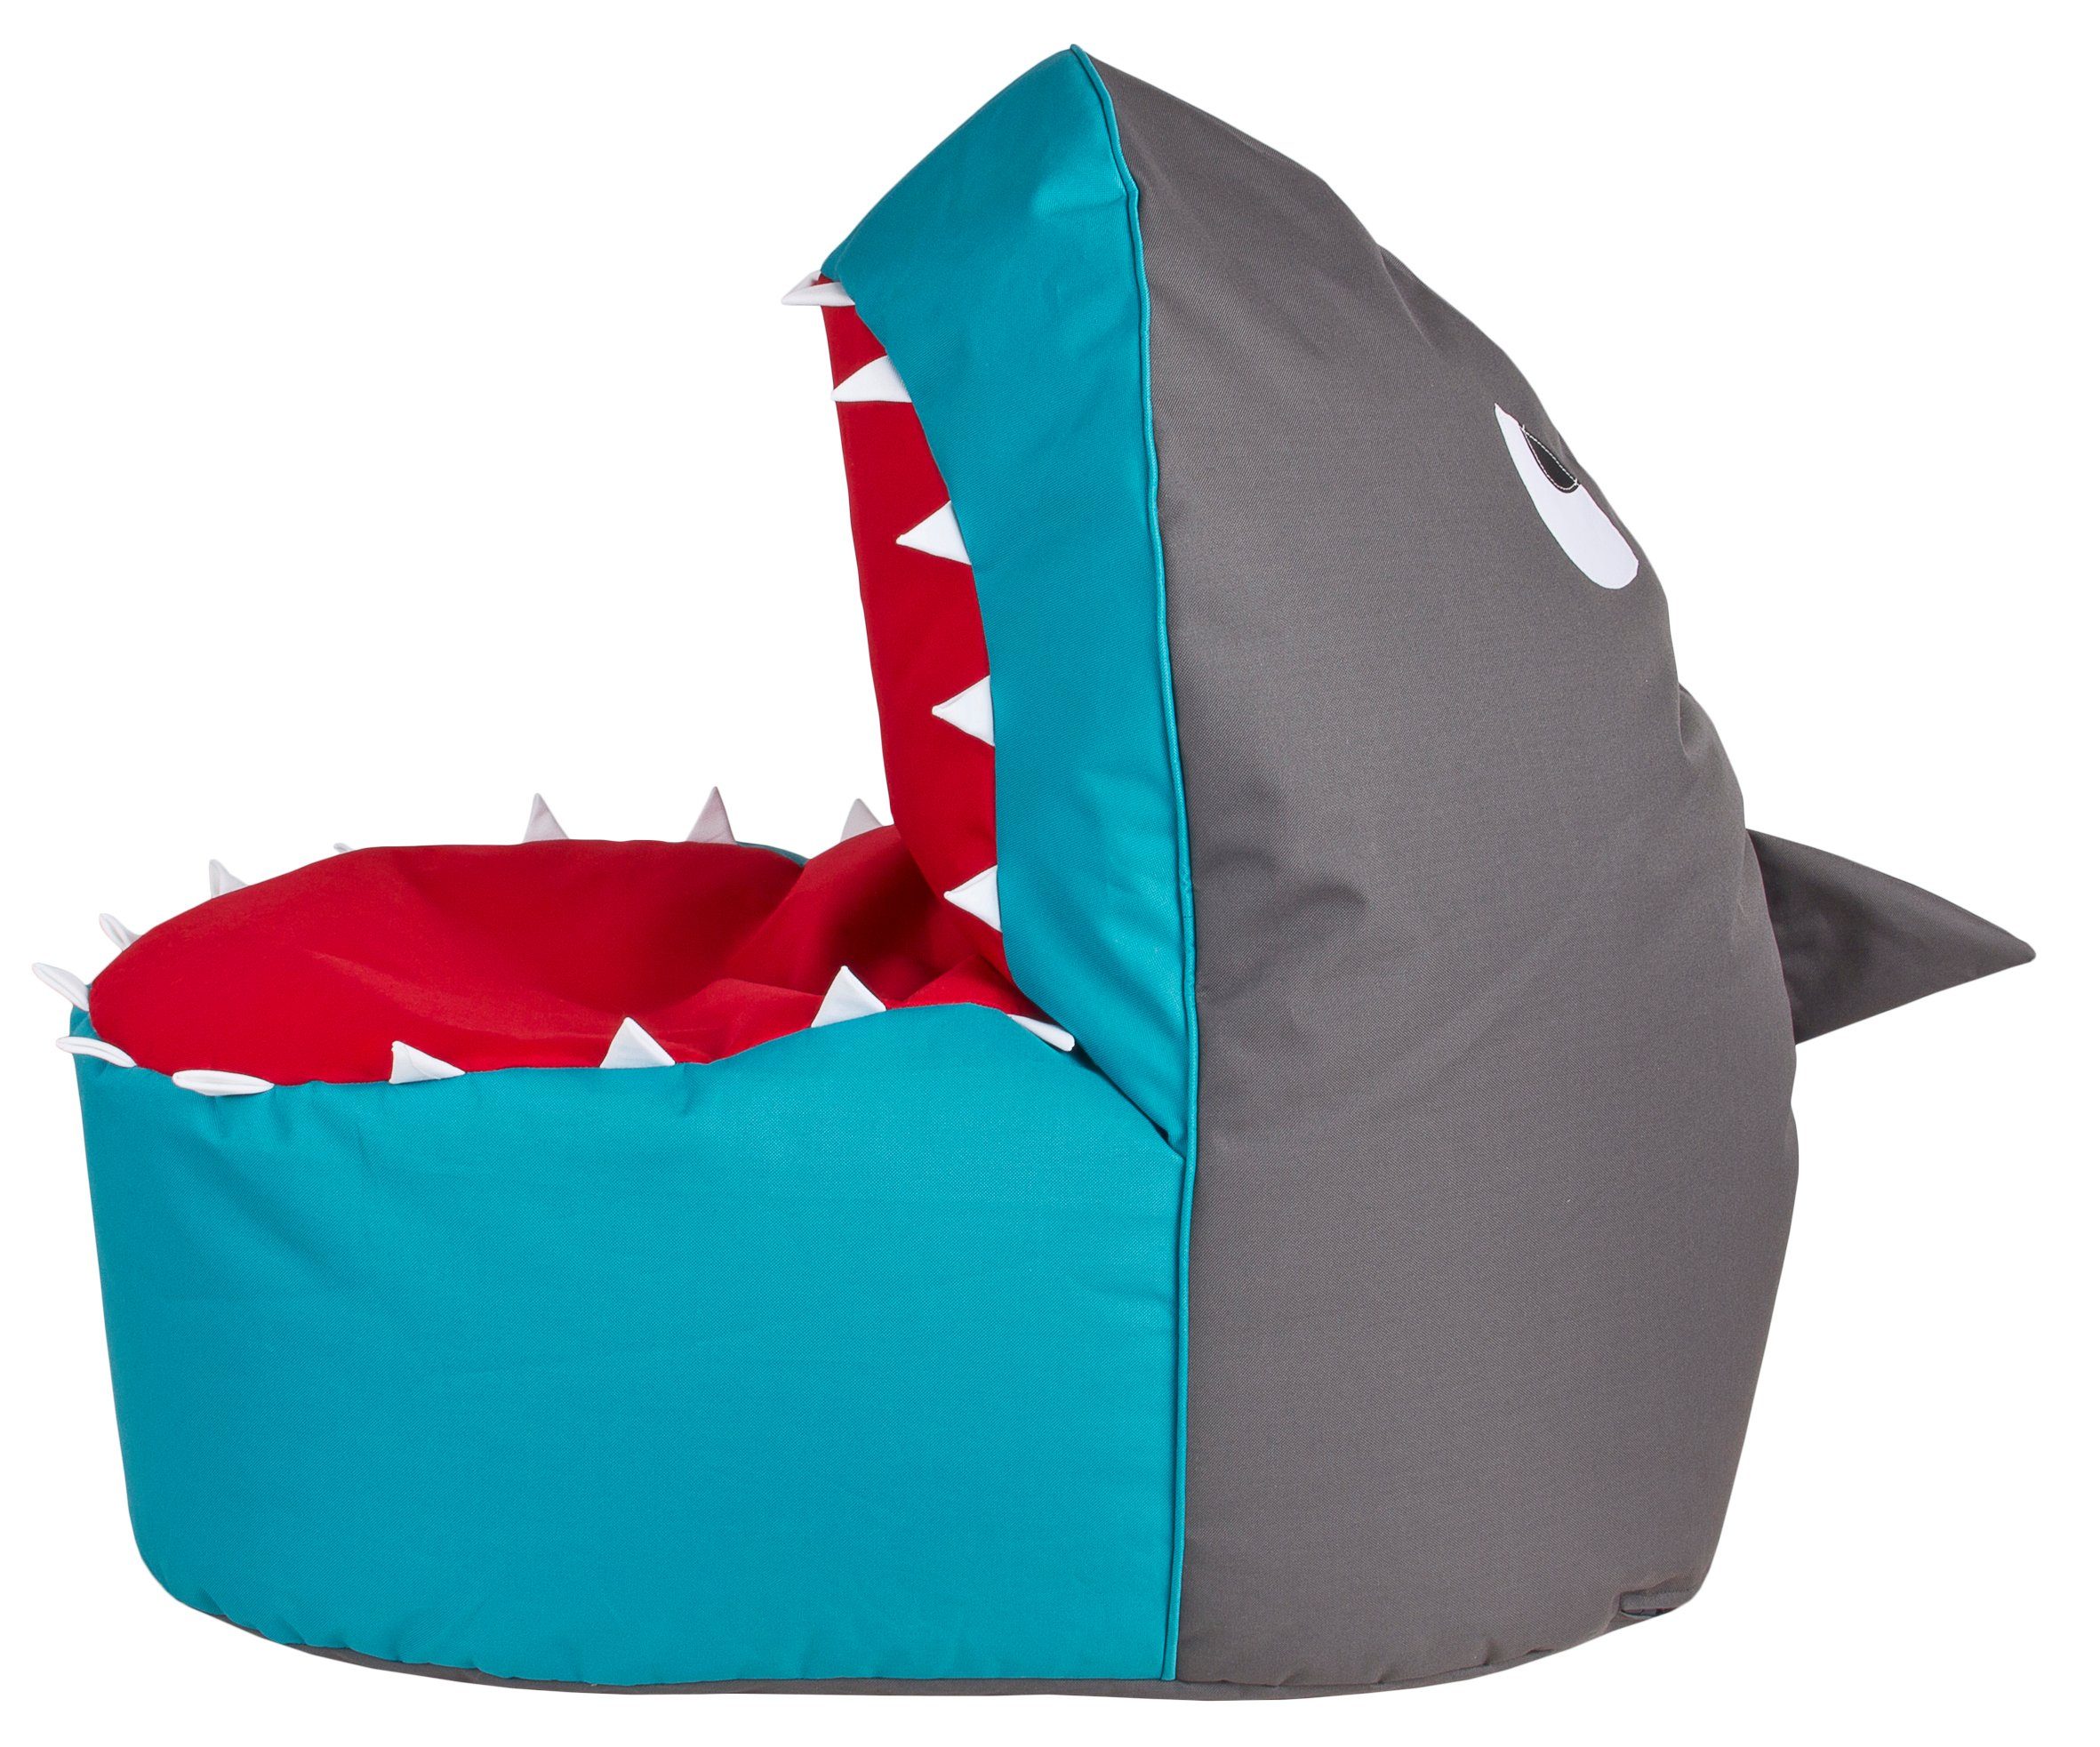 Magma Sitzsack Sitzsack 60x110cm Kindersitzsack Brava POINT Anthrazit, Shark SITTING